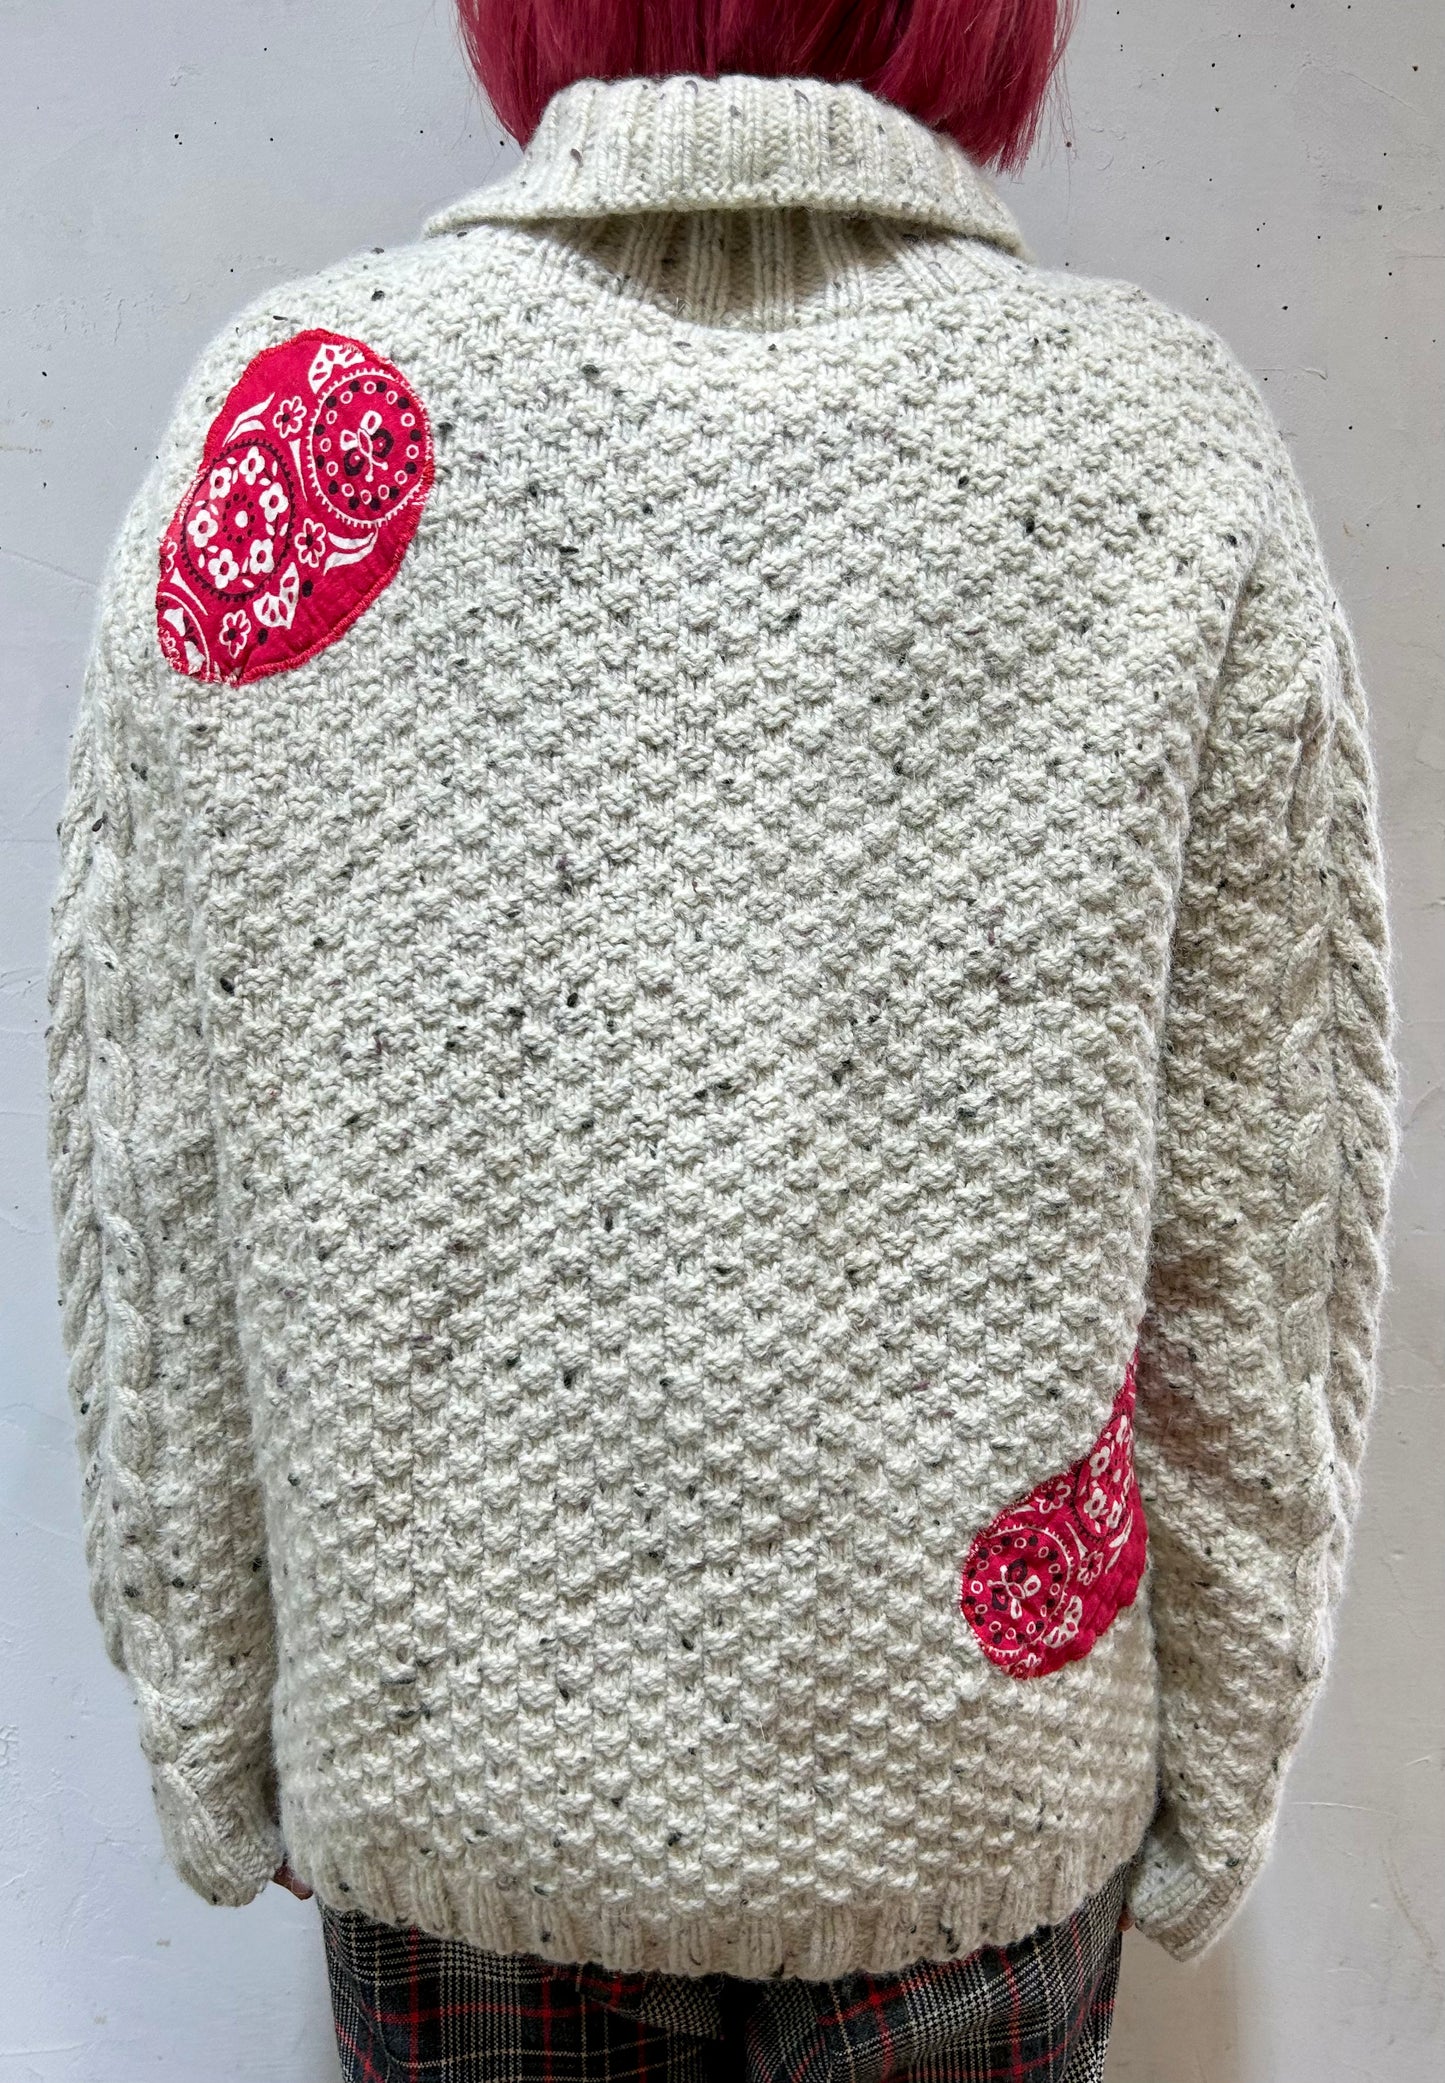 Vintage Bandanna Patch Aran Knit Sweater 〜Amy Nina 〜 [K25635]